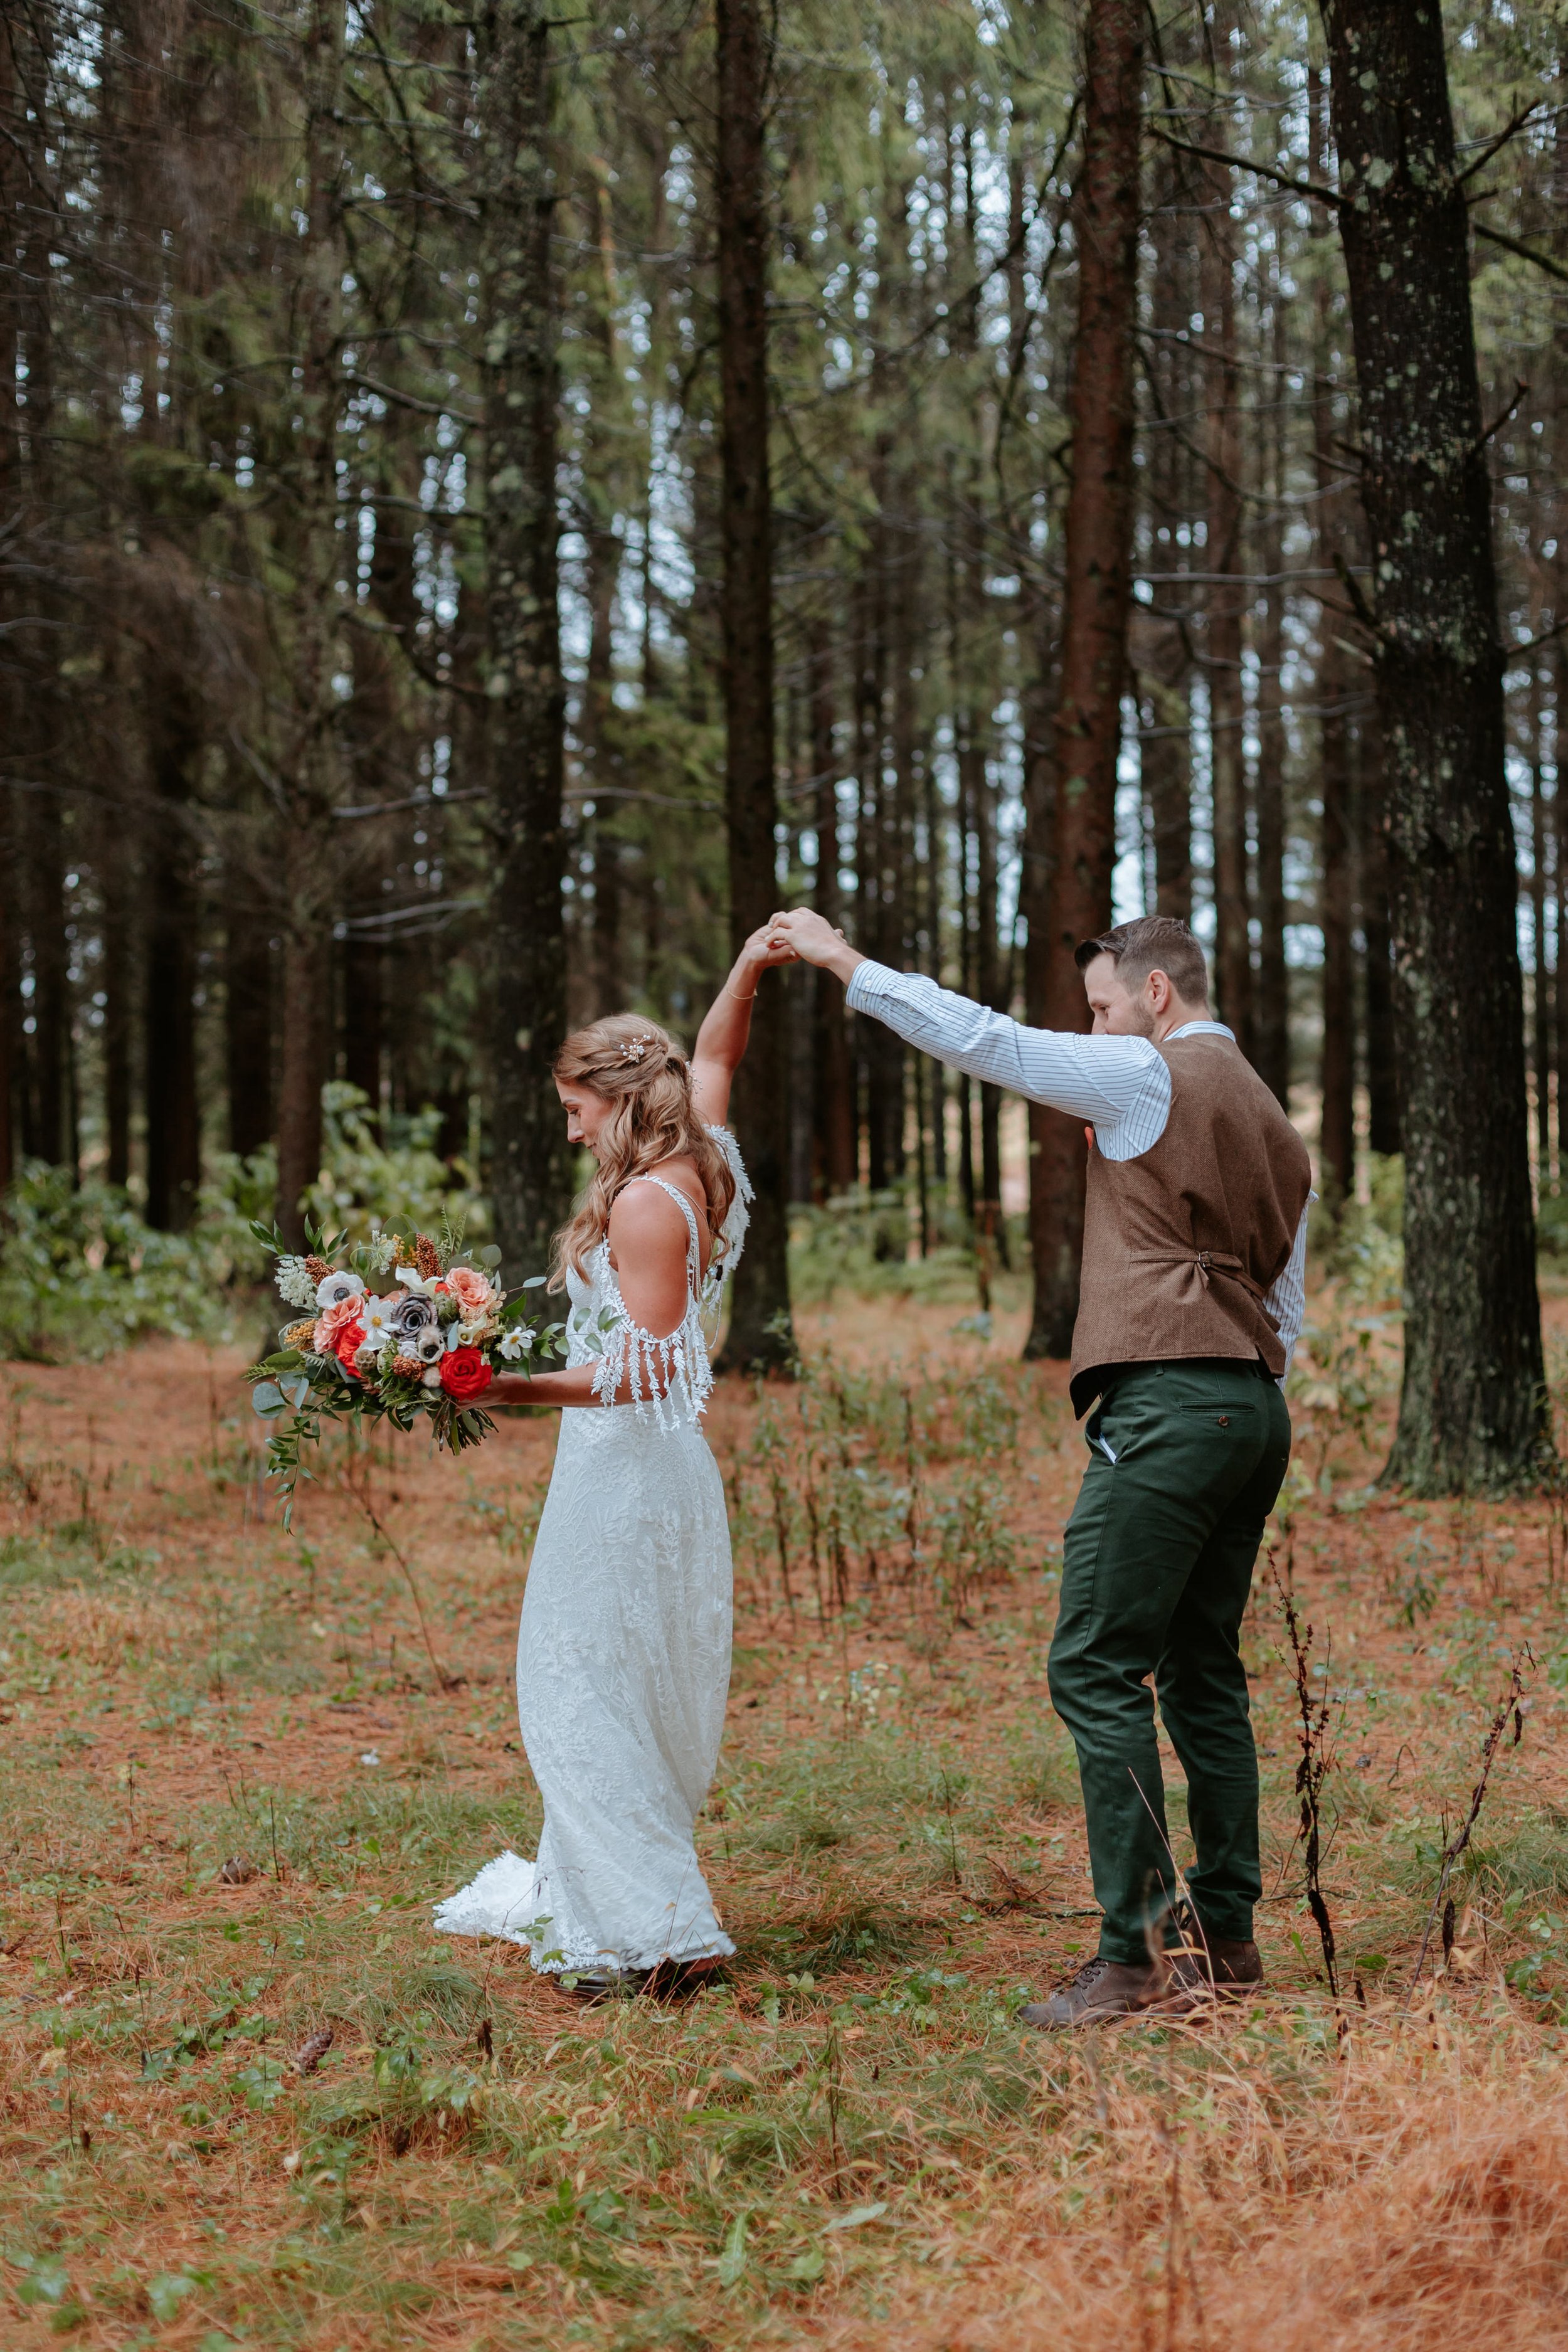 Groom twirls bride around in forest.